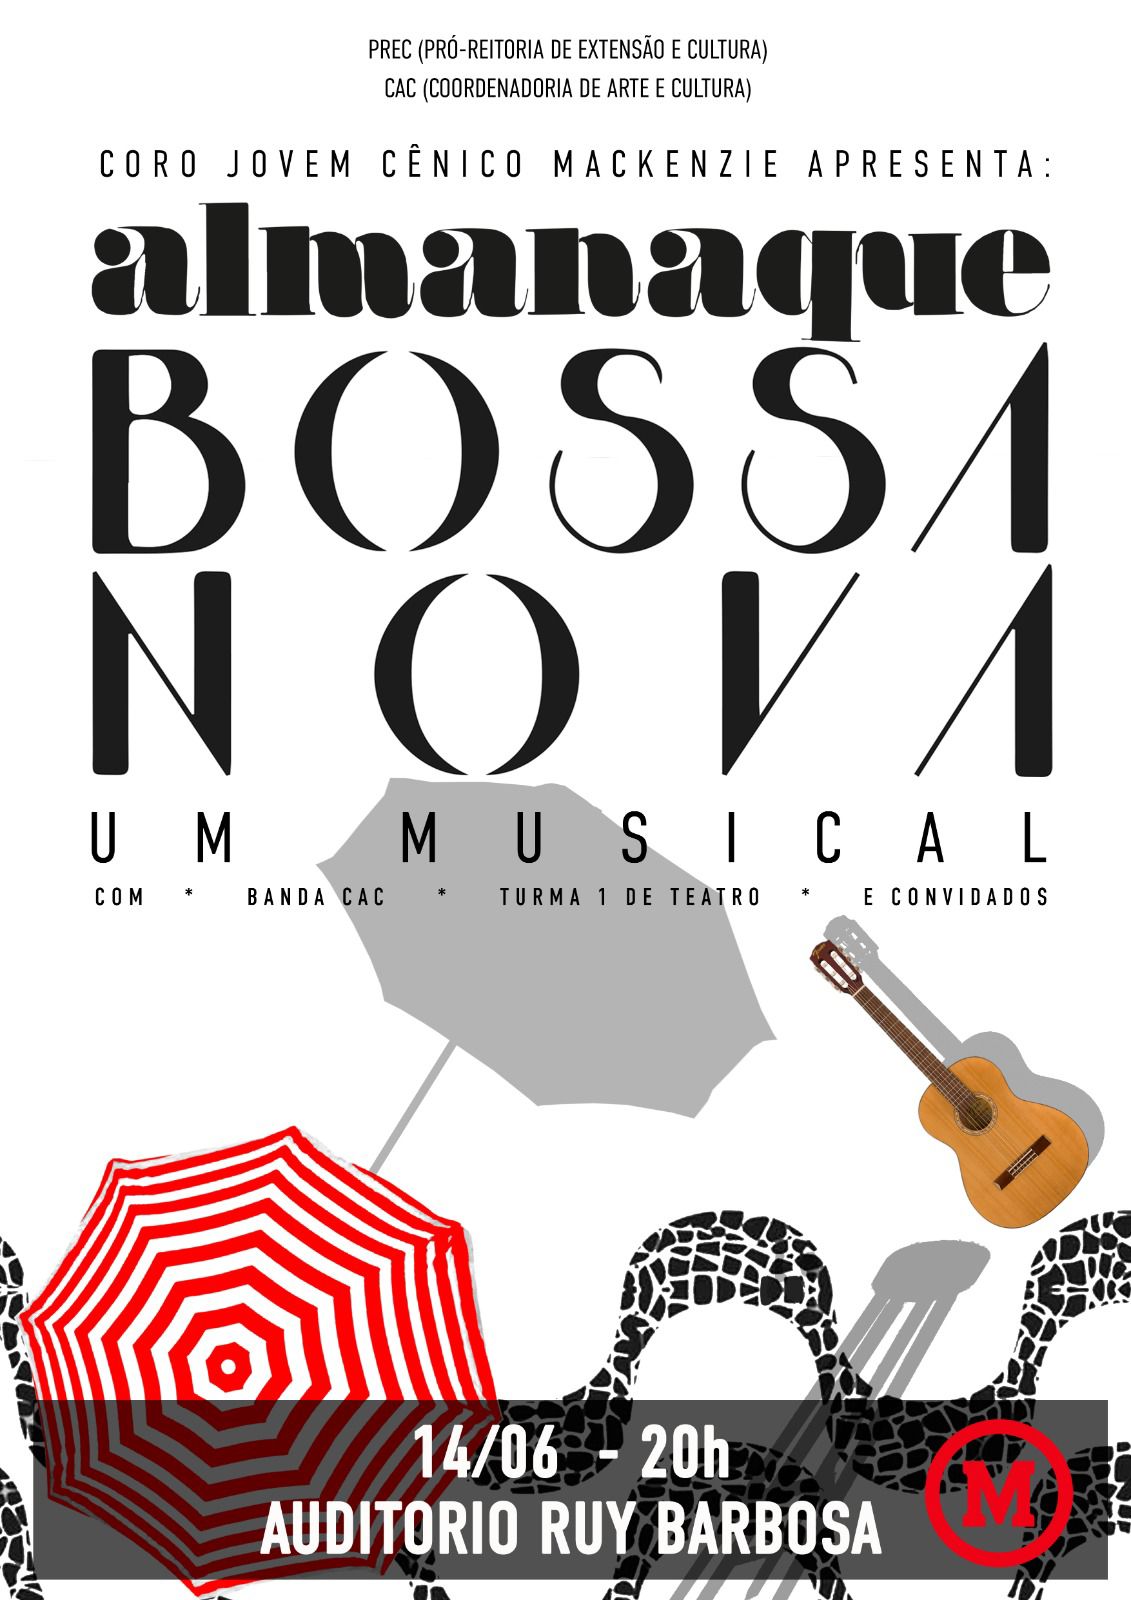 Conheça ou relembre a Bossa Nova em 18 músicas incríveis - LETRAS